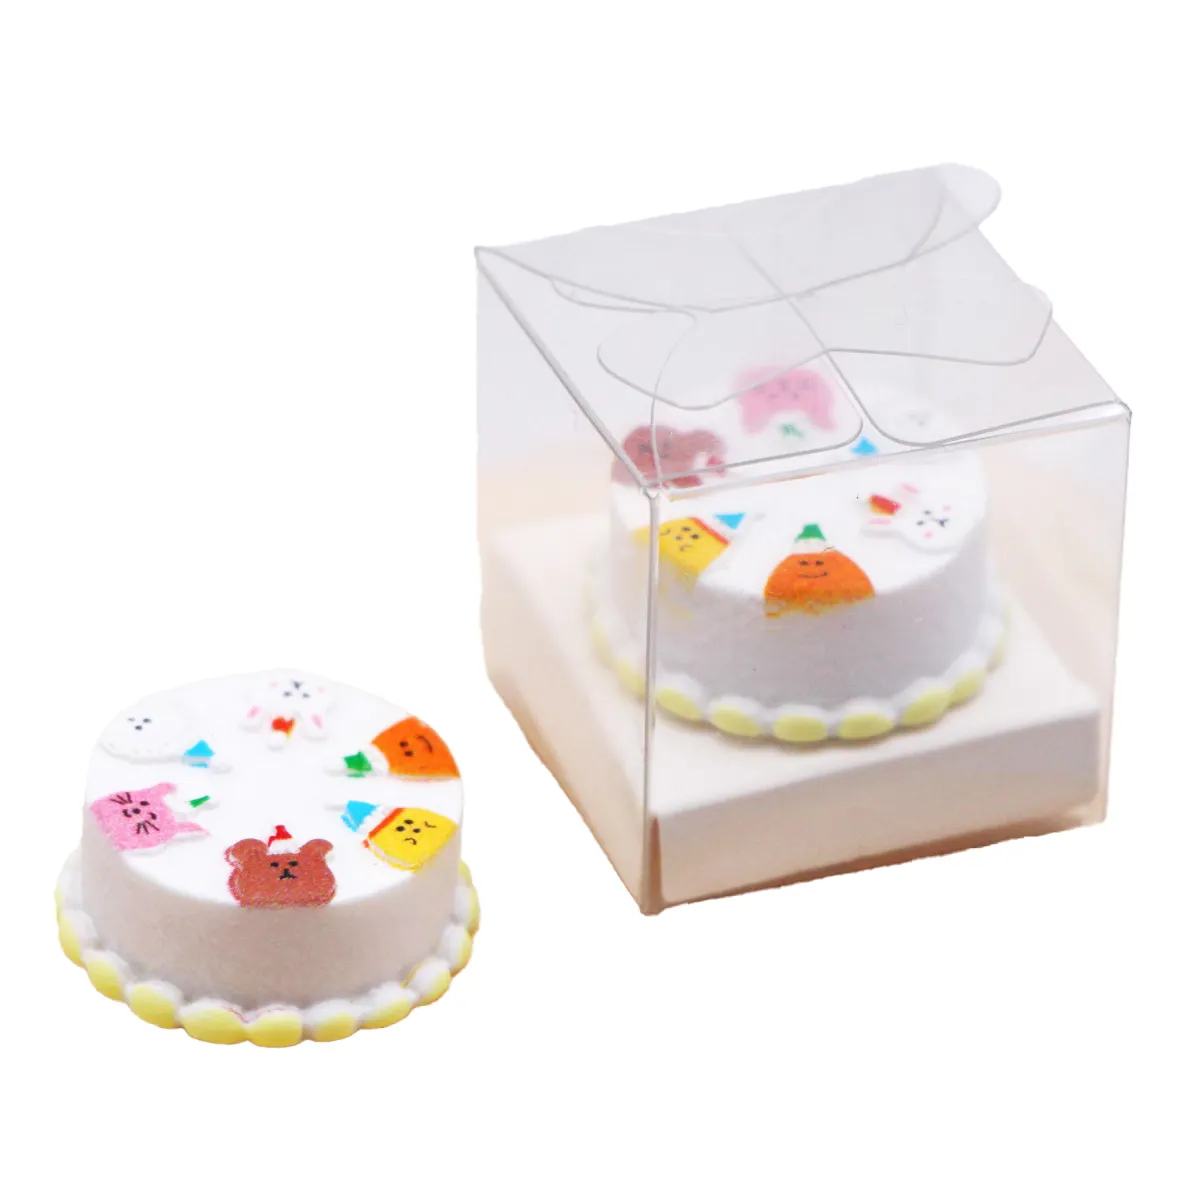 מיני סימולציה אפיית קינוח עוגת יום הולדת דגם בית בובות מיניאטורי אוכל משחק סצנת קישוט אביזרי